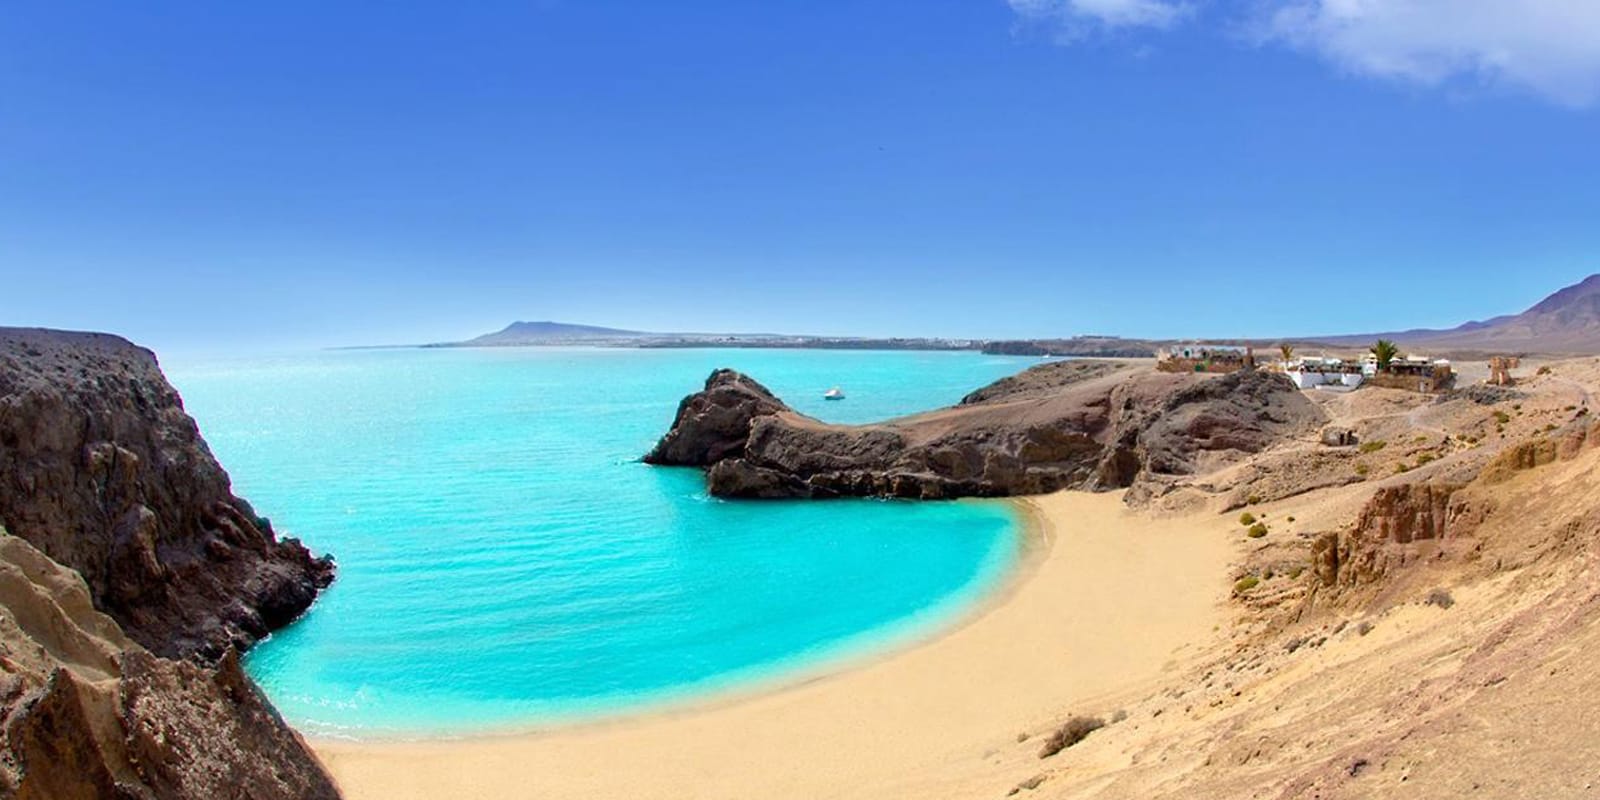 Playa de Papagayo turquoise water Lanzarote